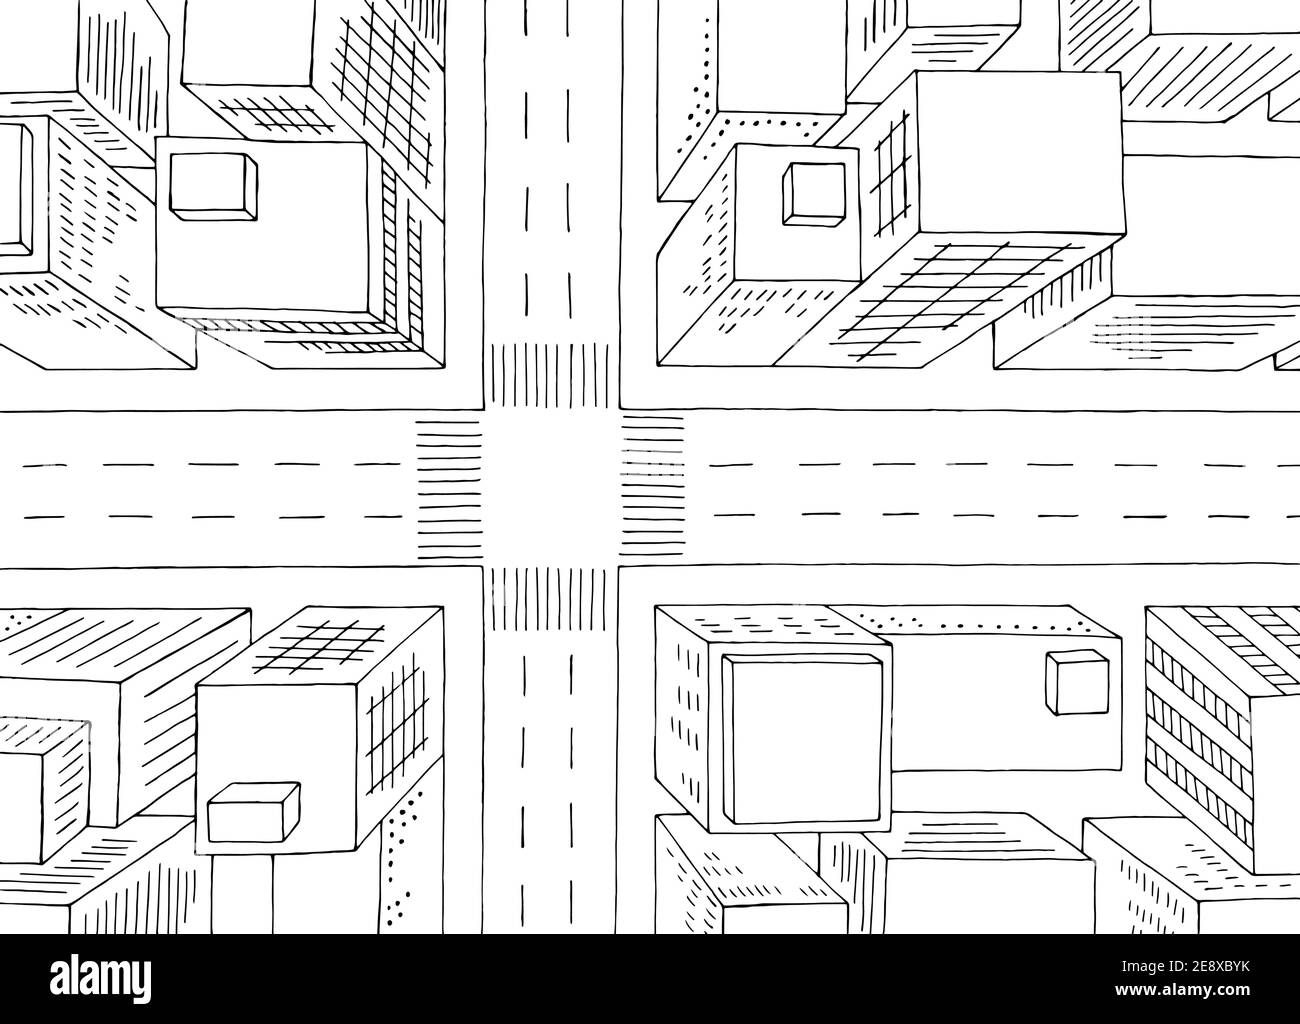 City Draufsicht von oben Luftüberfahrt Straßengrafik schwarz Vektor der weißen Skizzendarstellung Stock Vektor